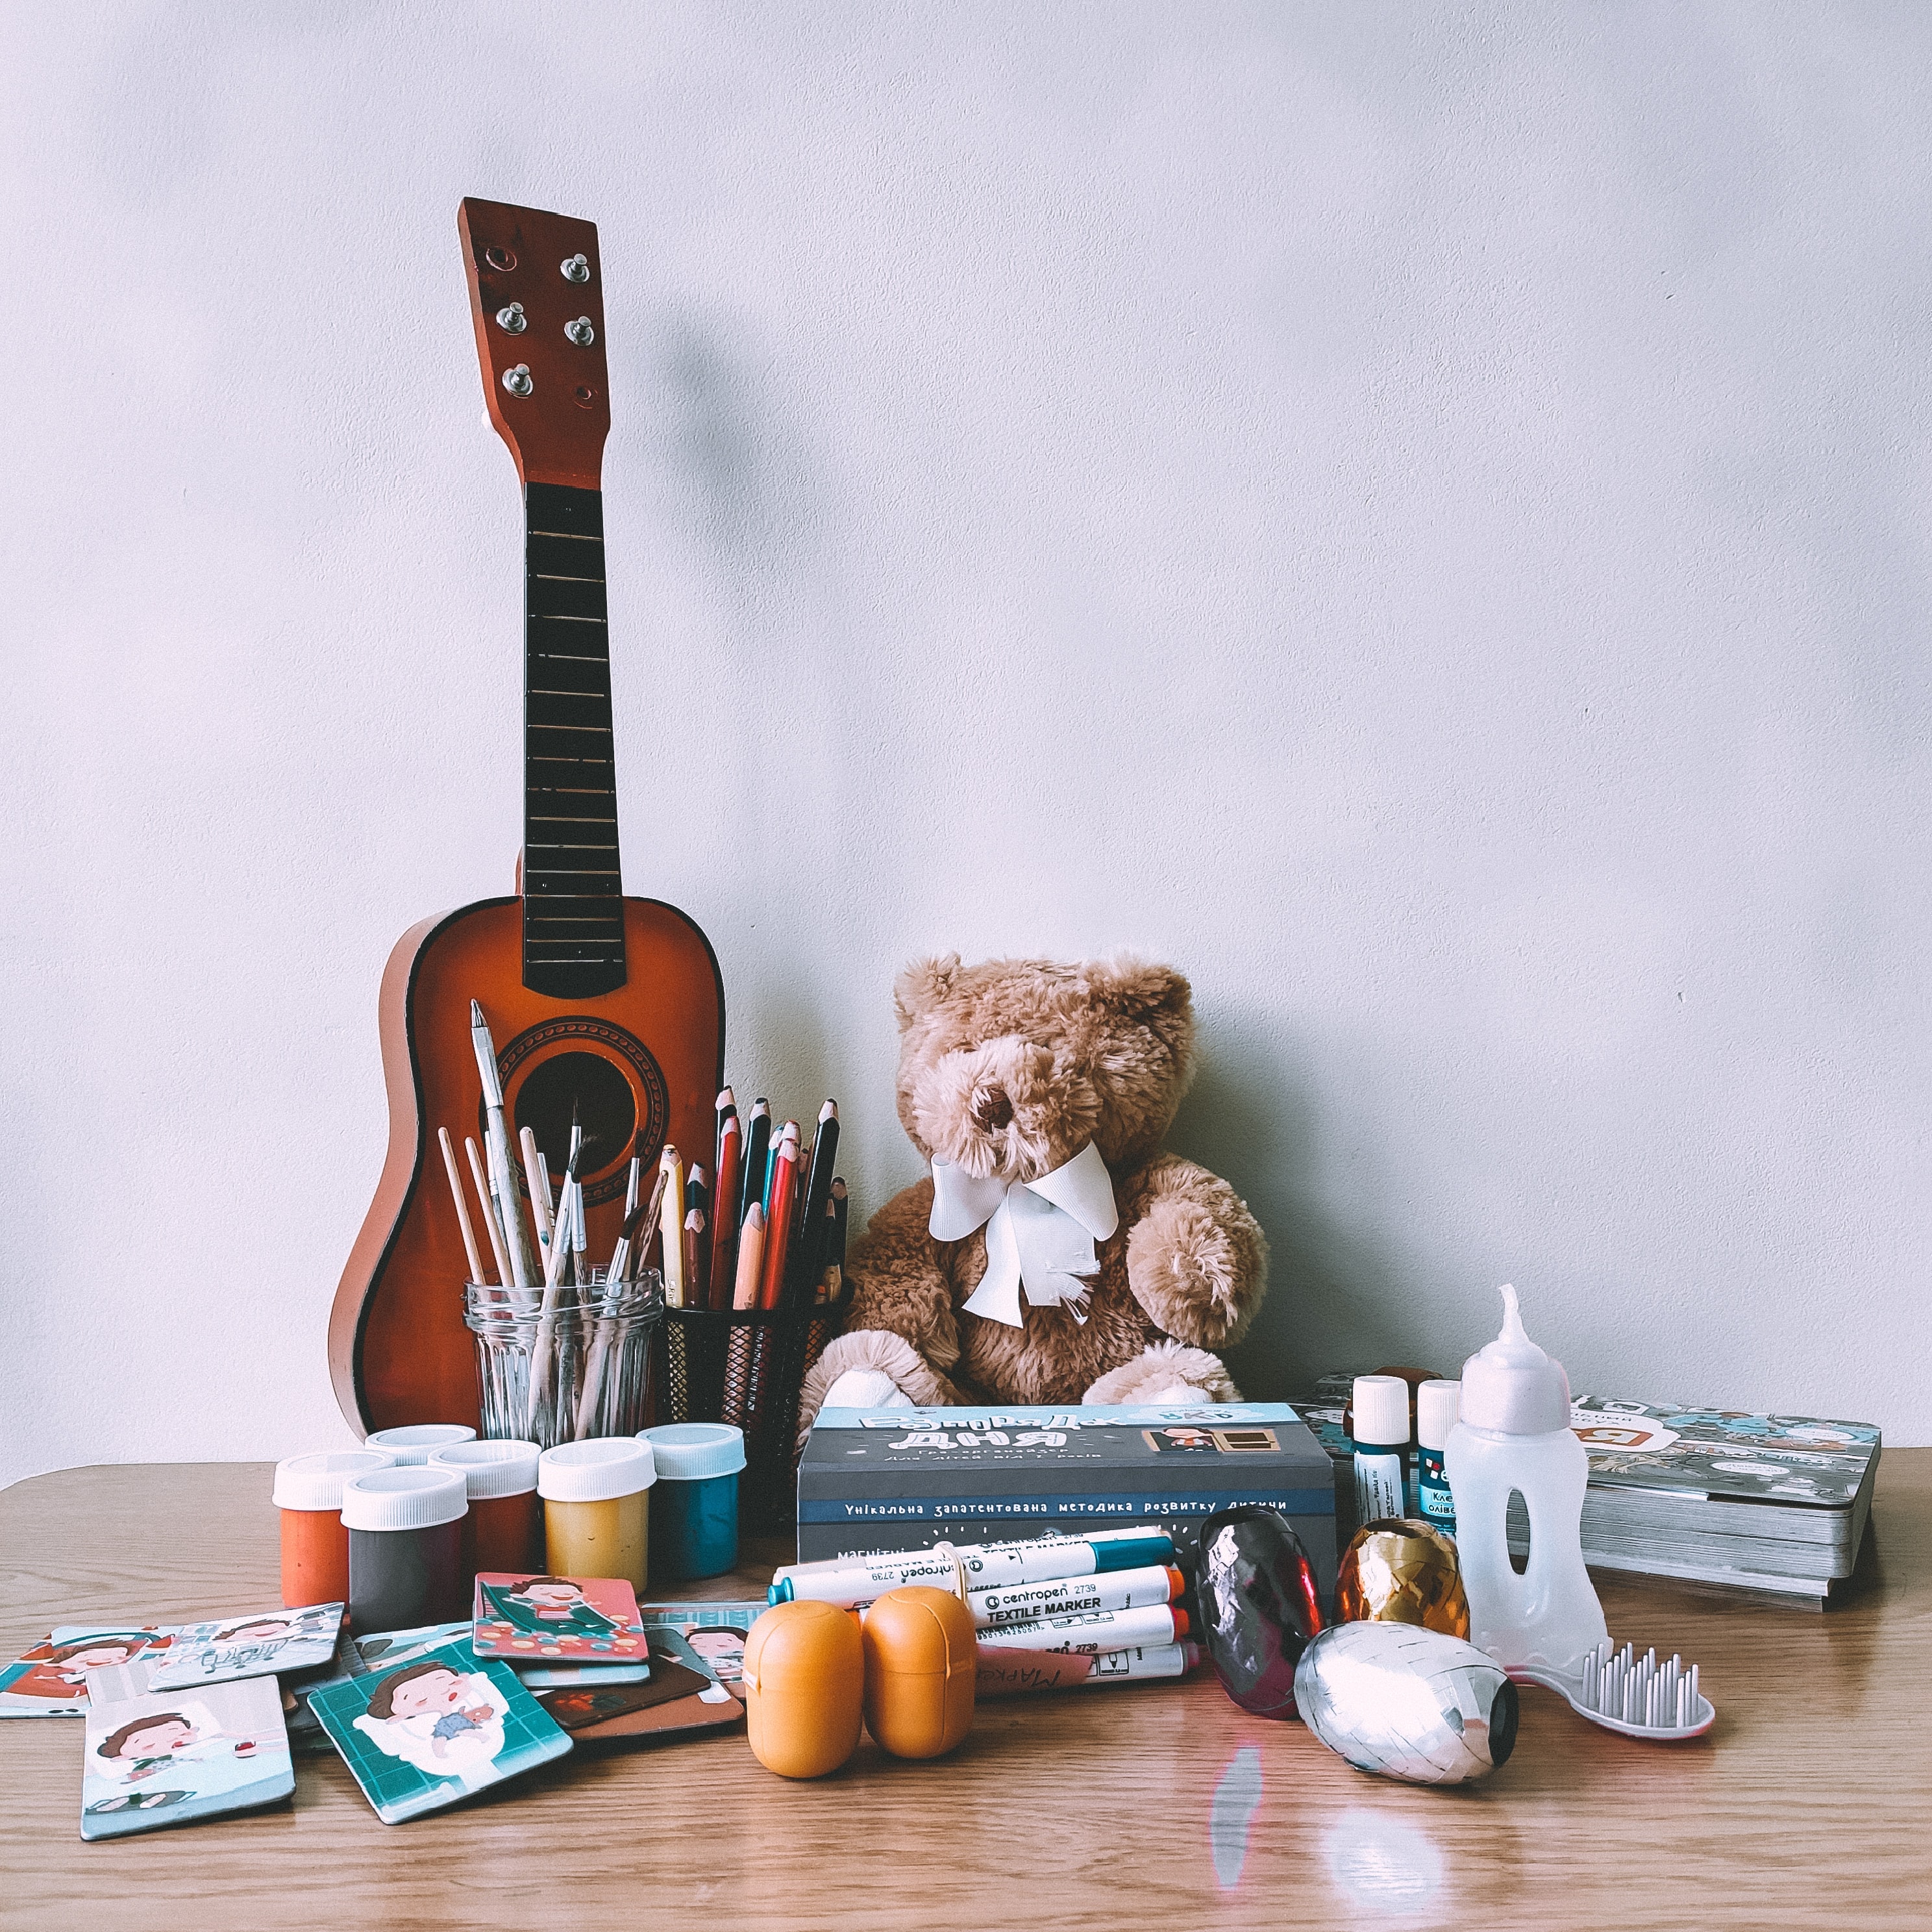 guitar, miscellanea, miscellaneous, toy, musical instrument, pencils, paints